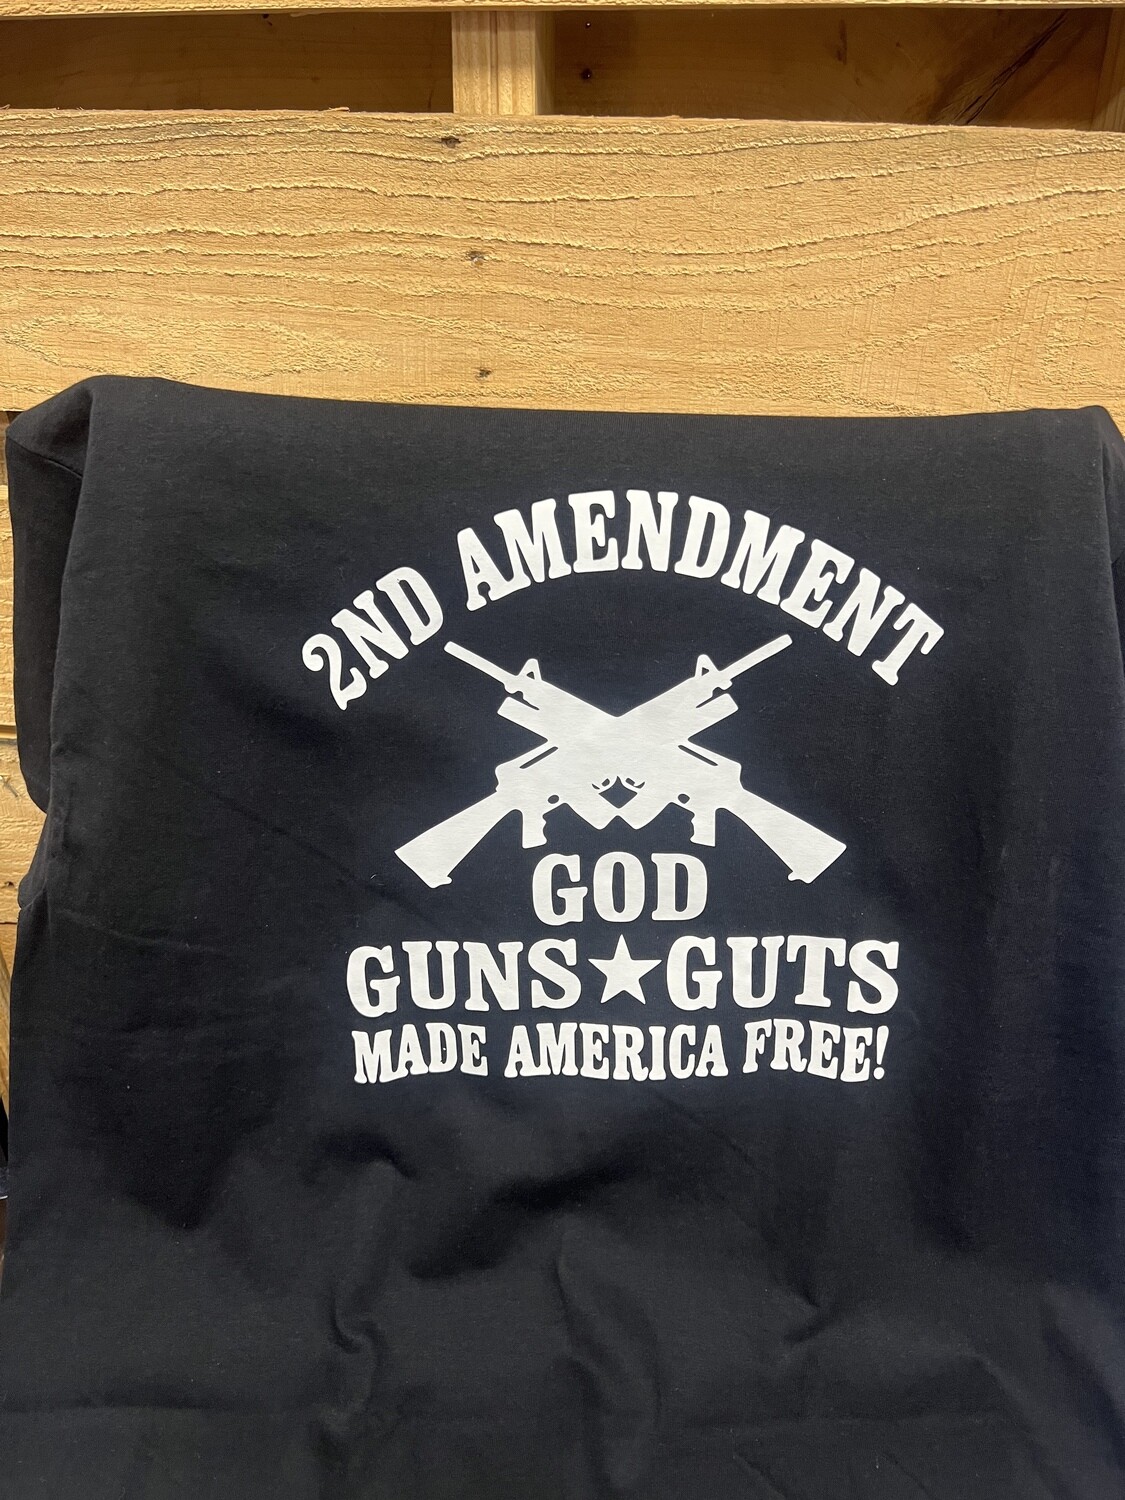 2nd Amendment God Guns Guts